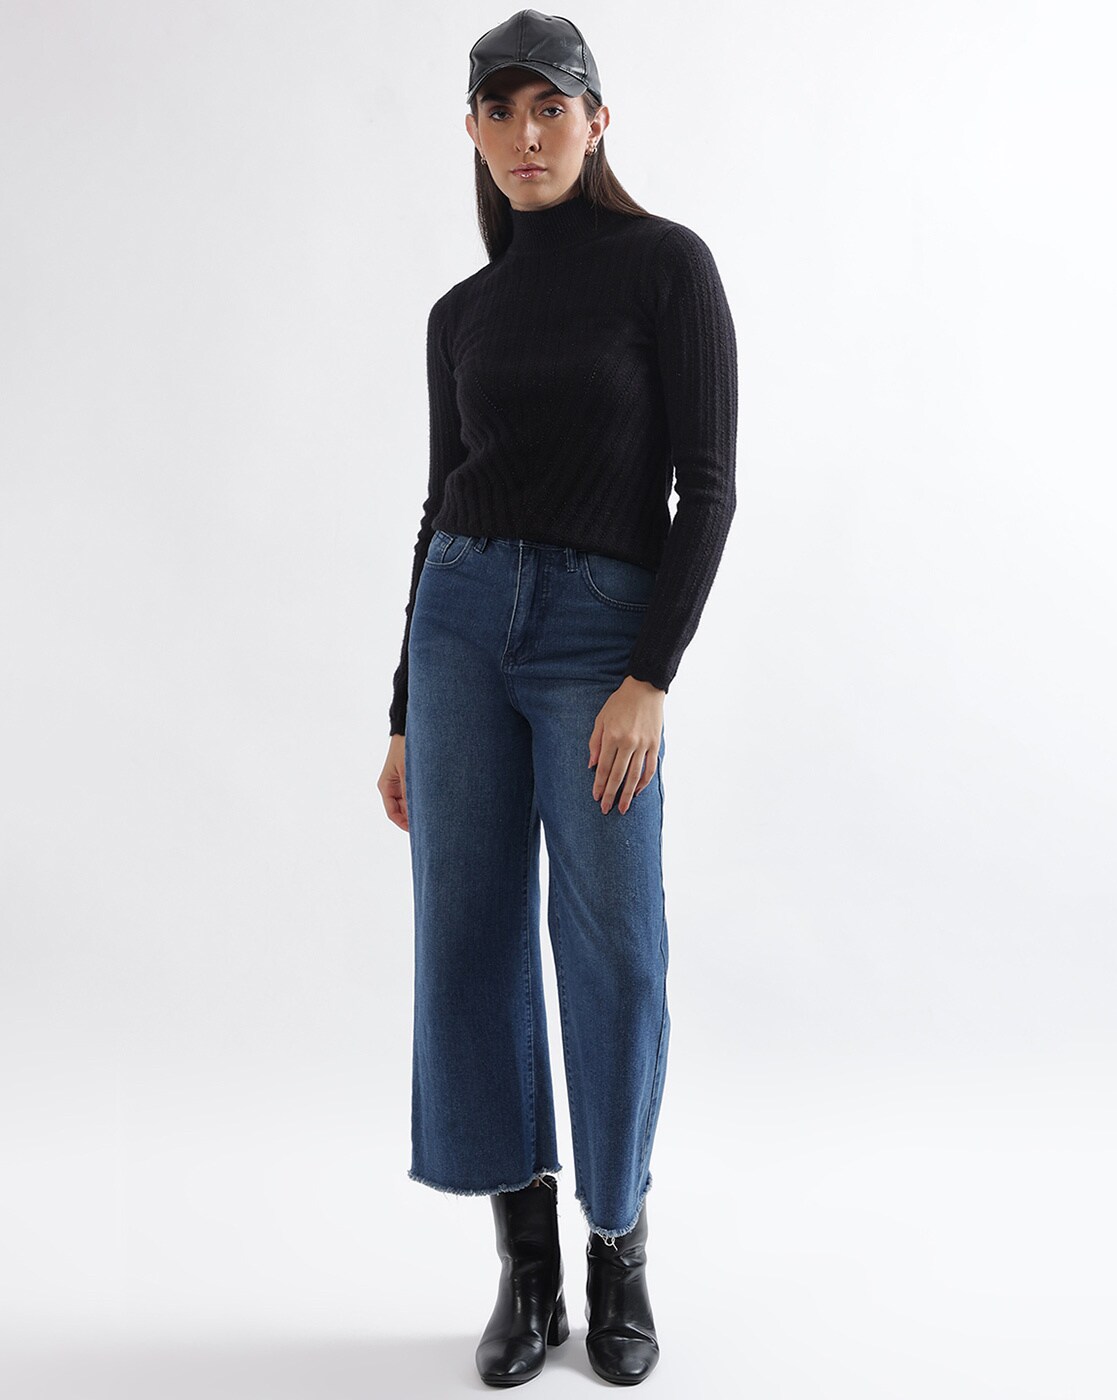 Elainilye Fashion Sweaters For Women, Turtleneck Women Ribbed Knit Sweater  Loose Turtleneck Sweater Long Sleeve Top Shirt Top